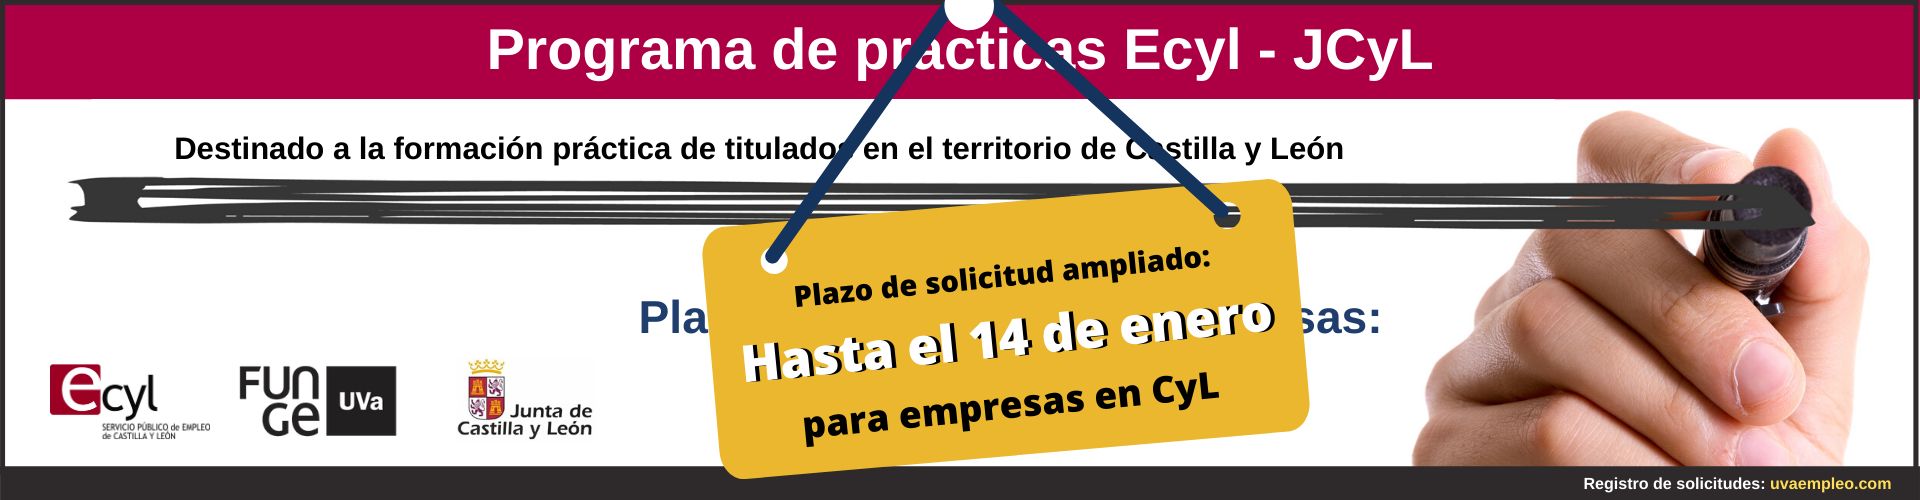 Programa de prácticas para titulados Ecyl JCyL 2020 Fundación General de la Universidad de Valladolid plazo de presentación ampliado